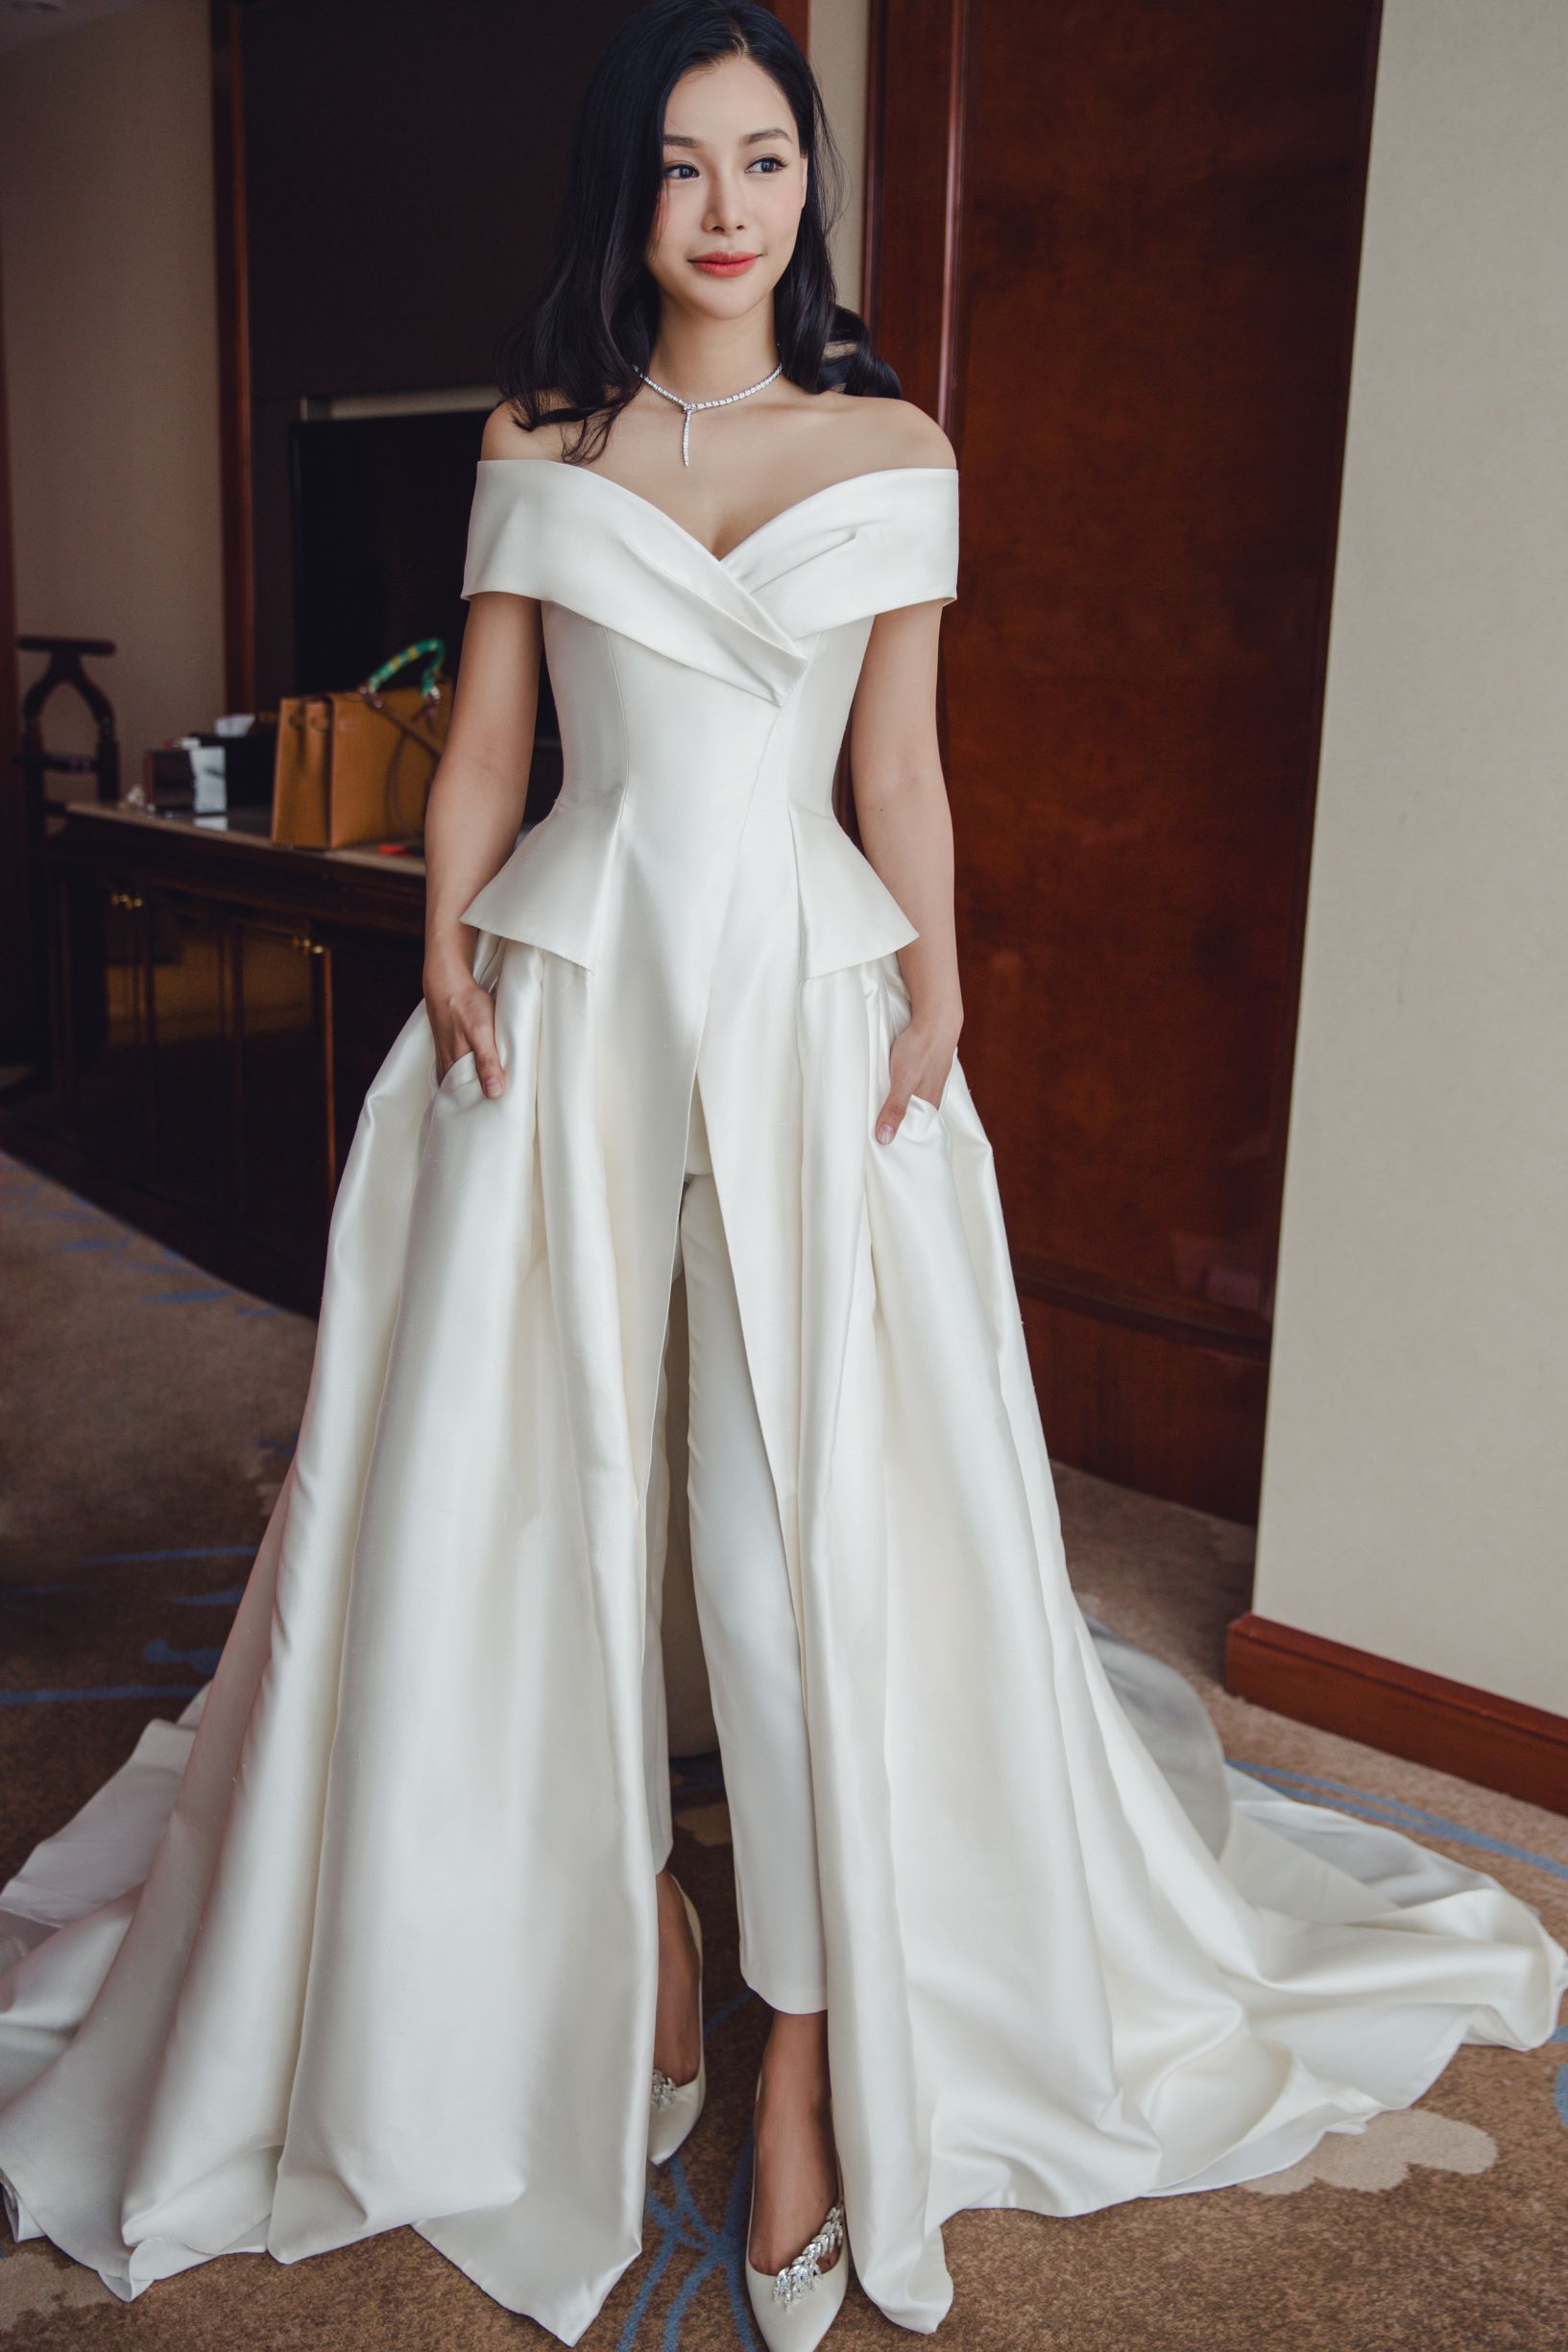 一件与众不同独特的婚纱并勇于创新的新娘时髦帅气气场十足